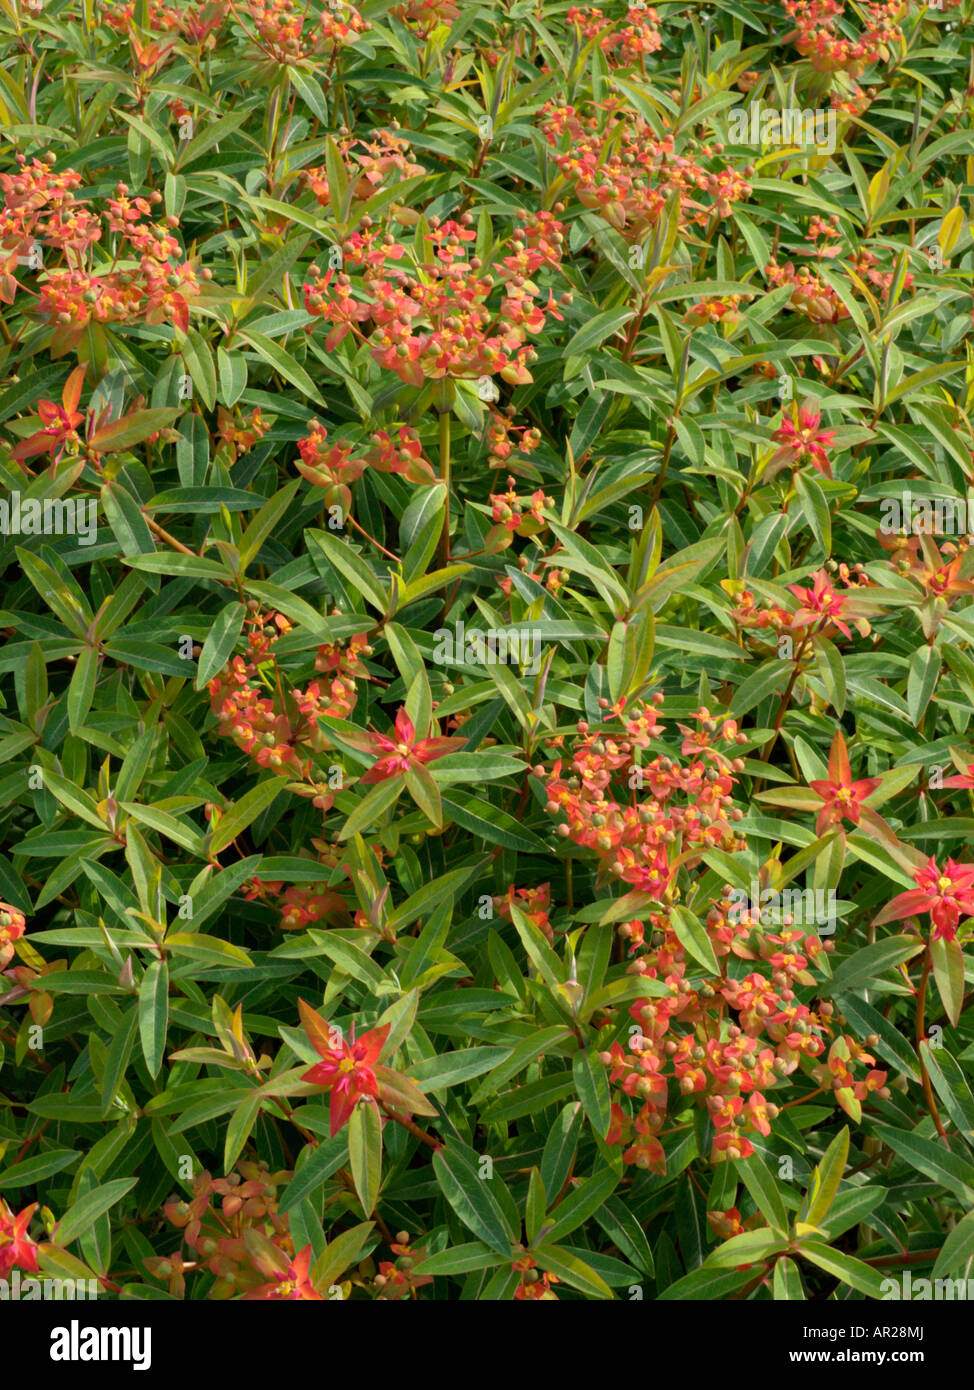 Fireglow spurge (Euphorbia griffithii 'Fireglow') Stock Photo